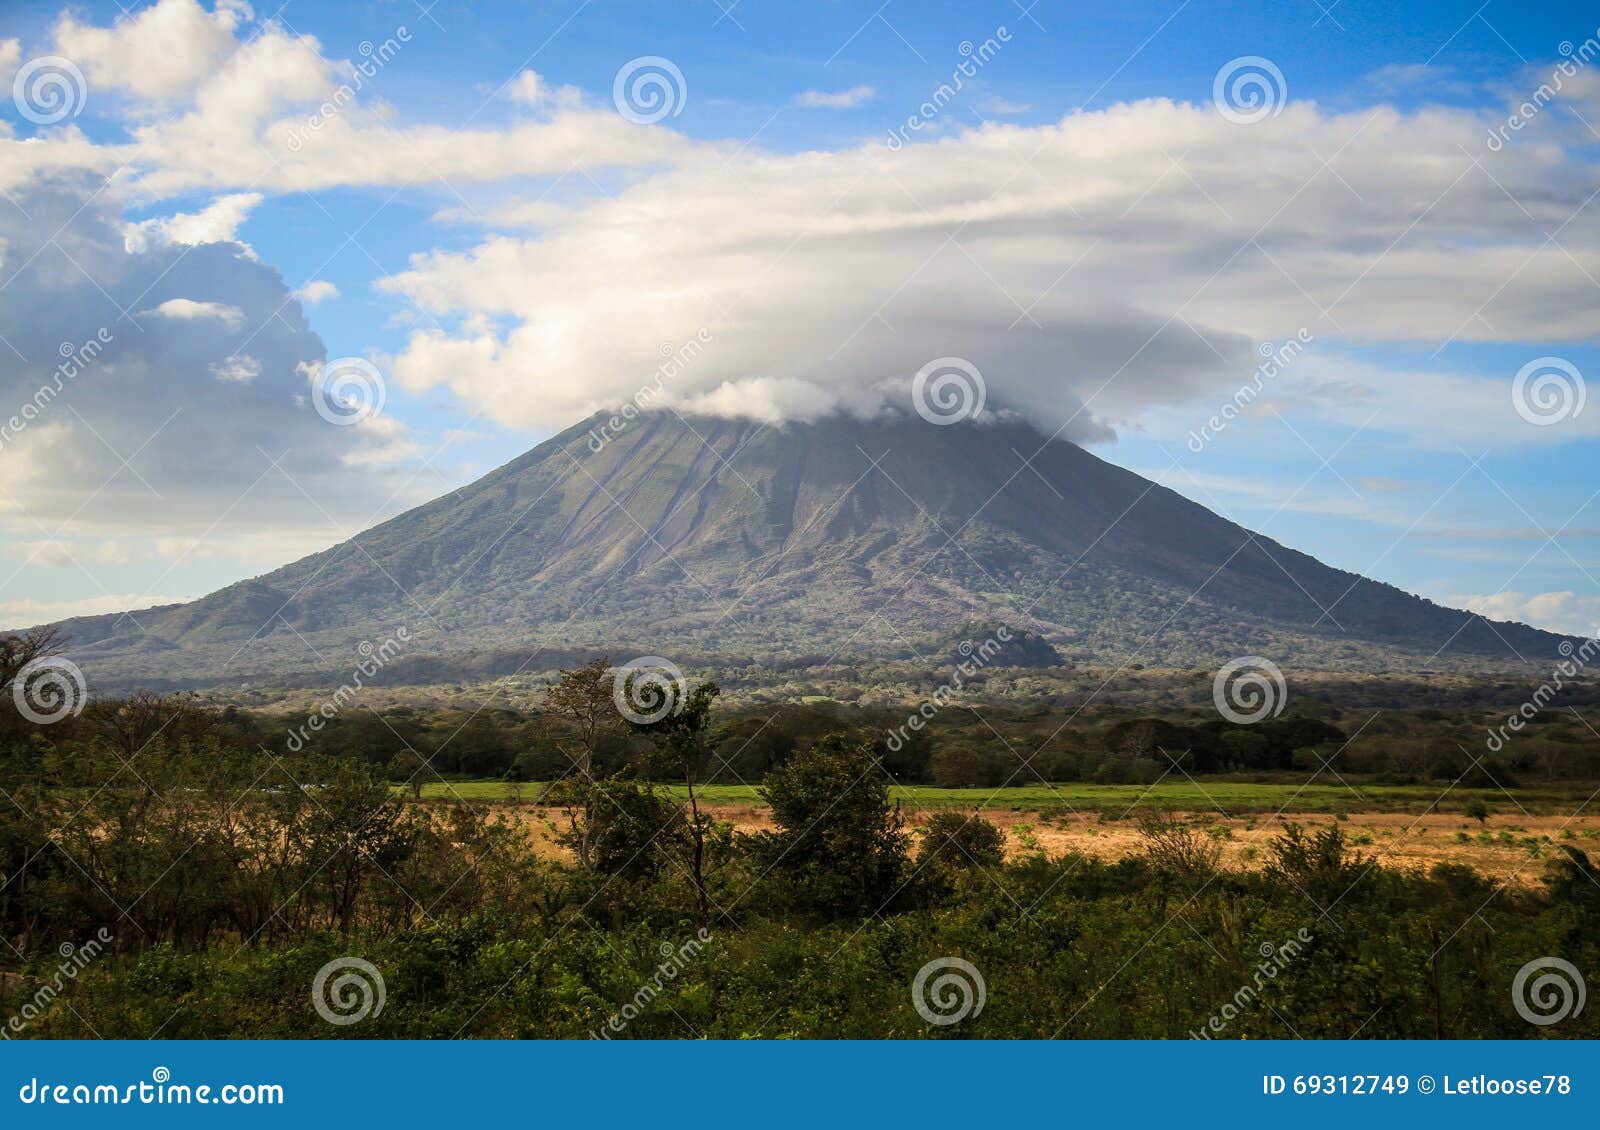 volcano on the ometepe island, nicaragua